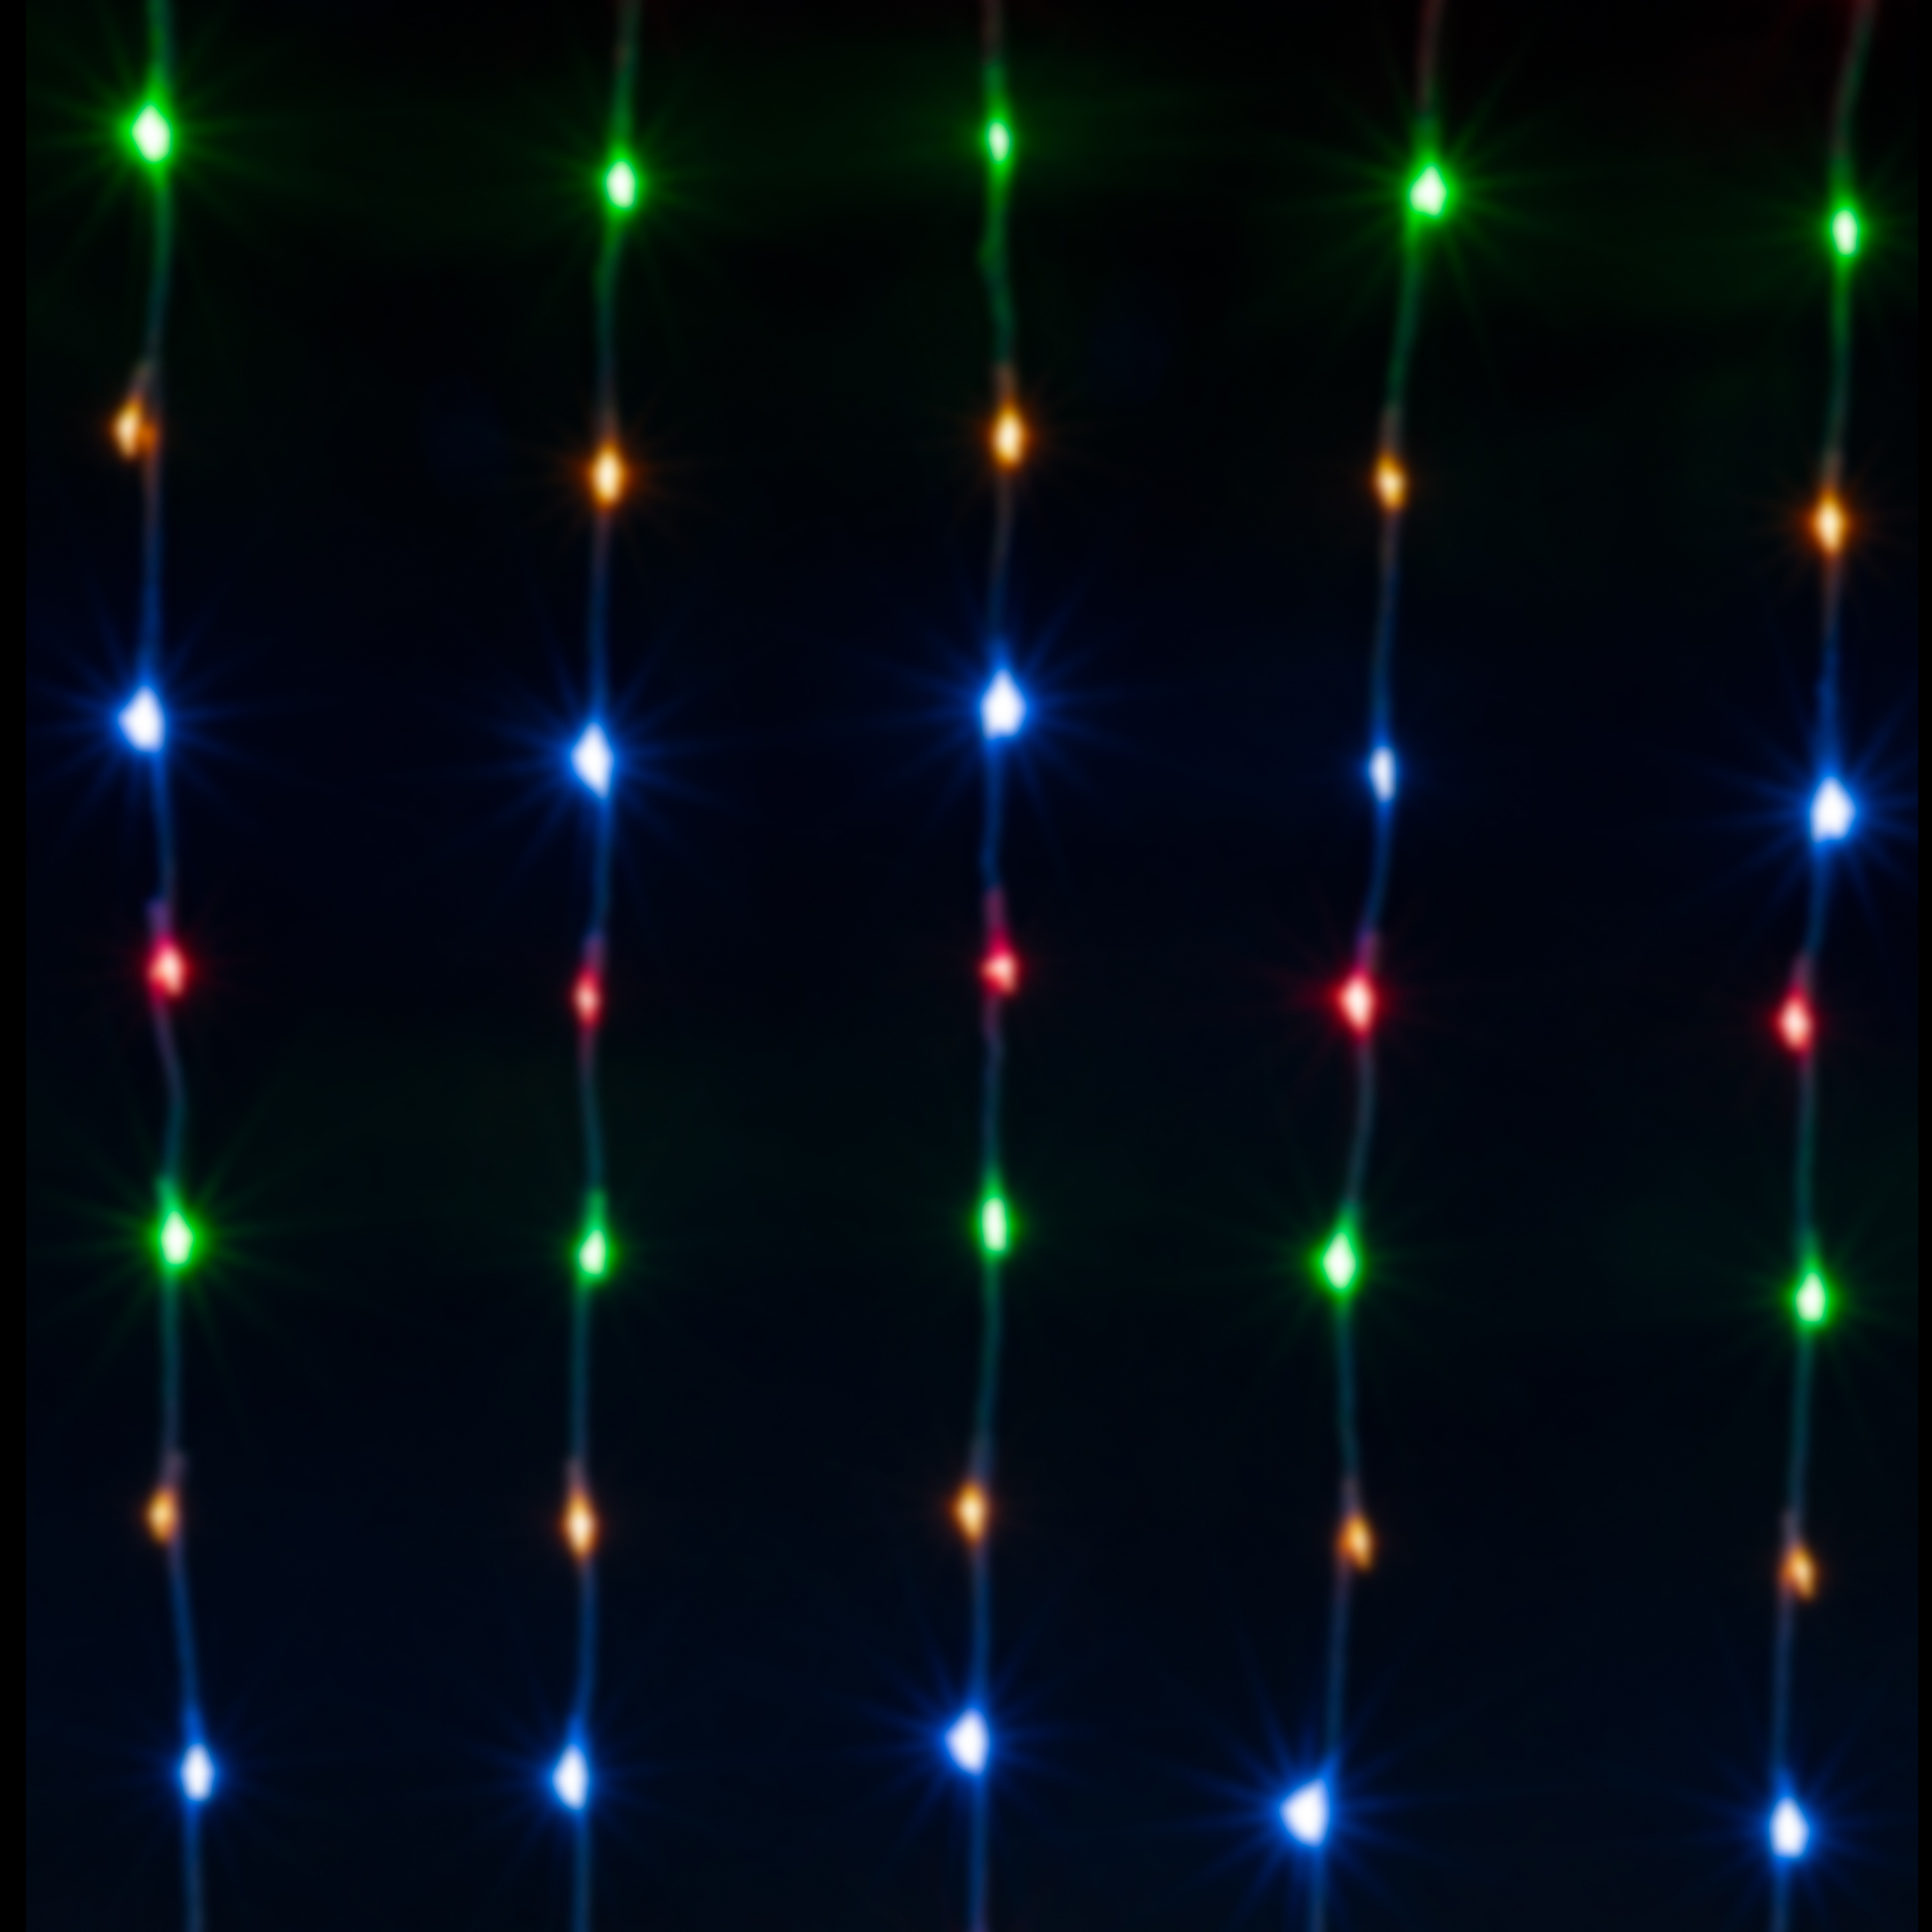 LED Backdrop Lights 600LED lights 12ft x 8ft - Multicolor